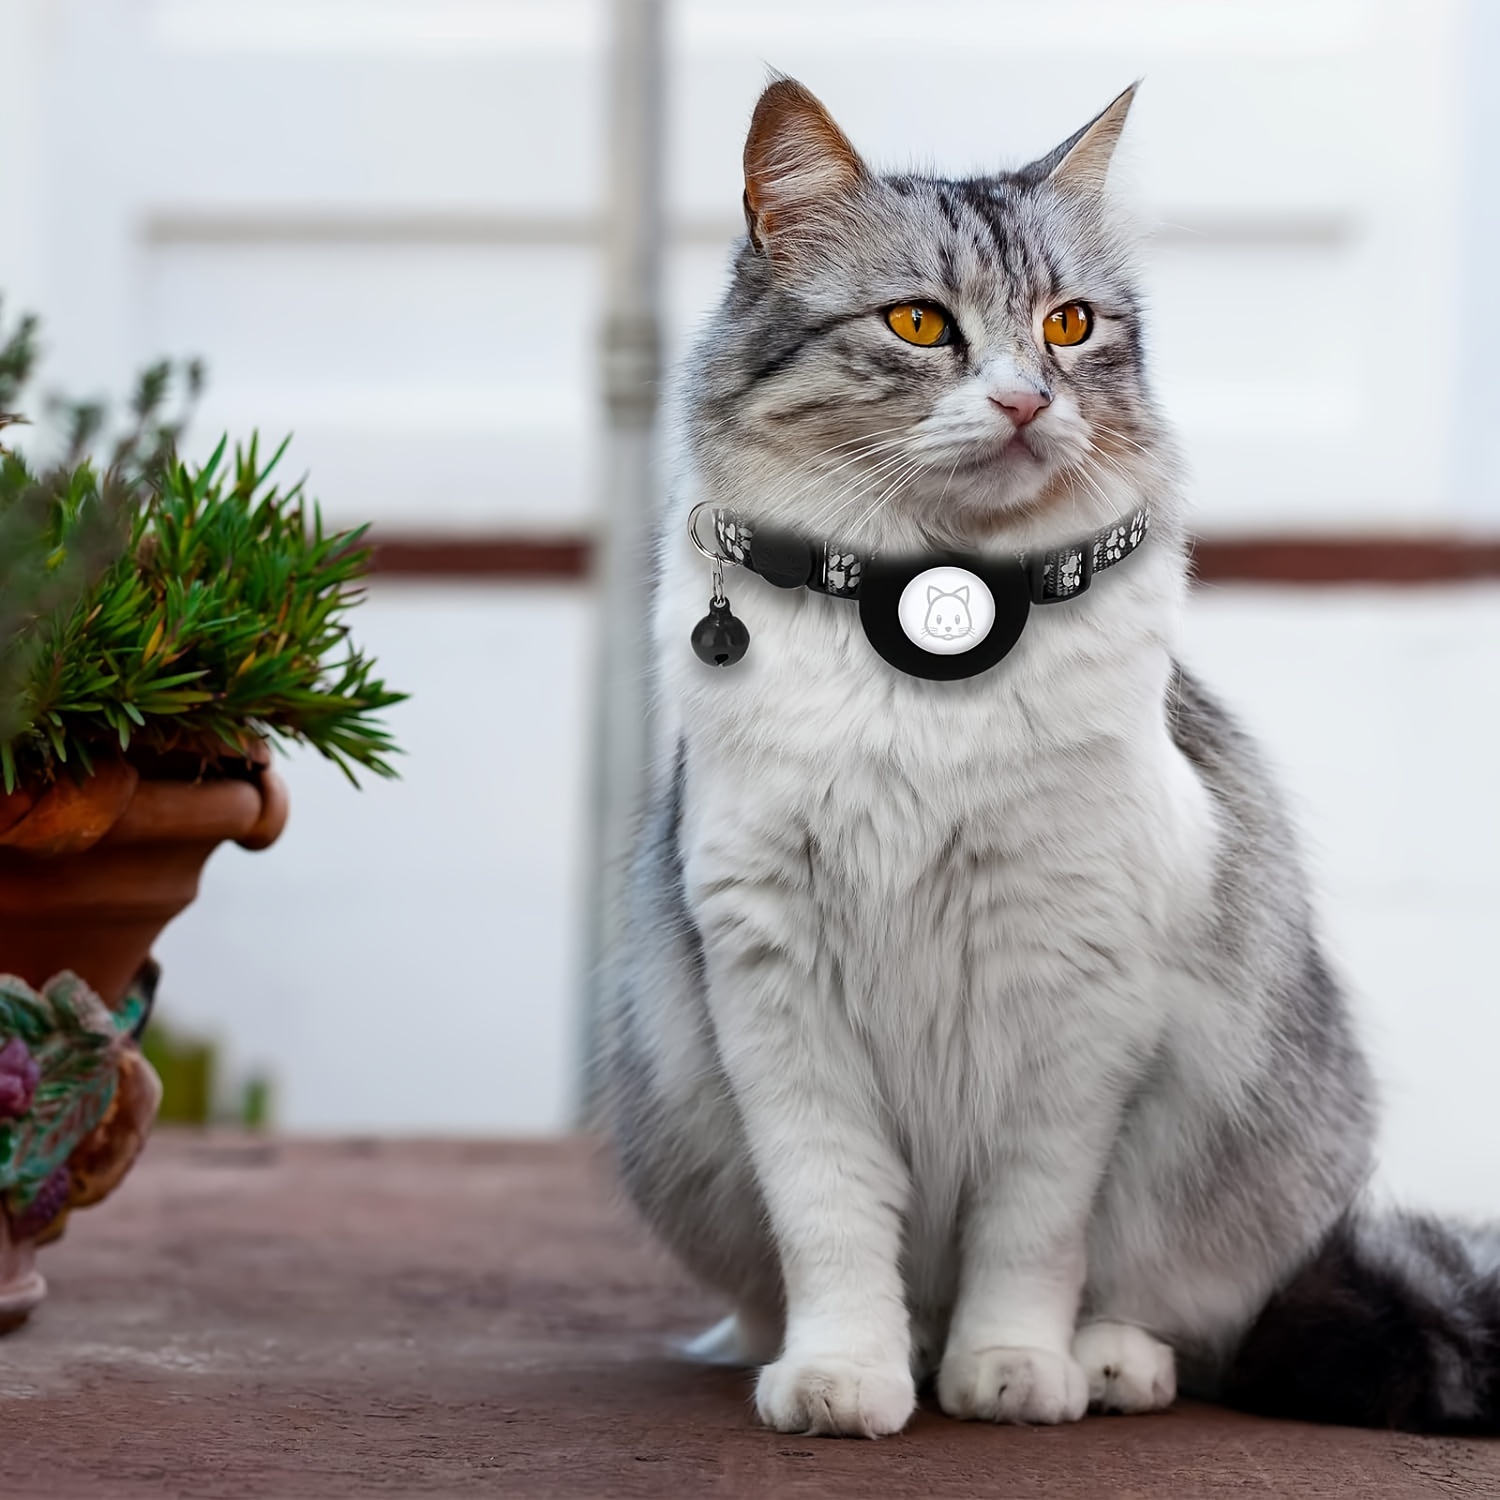 Collar de gato Airtag, collar de gato reflectante con campana y